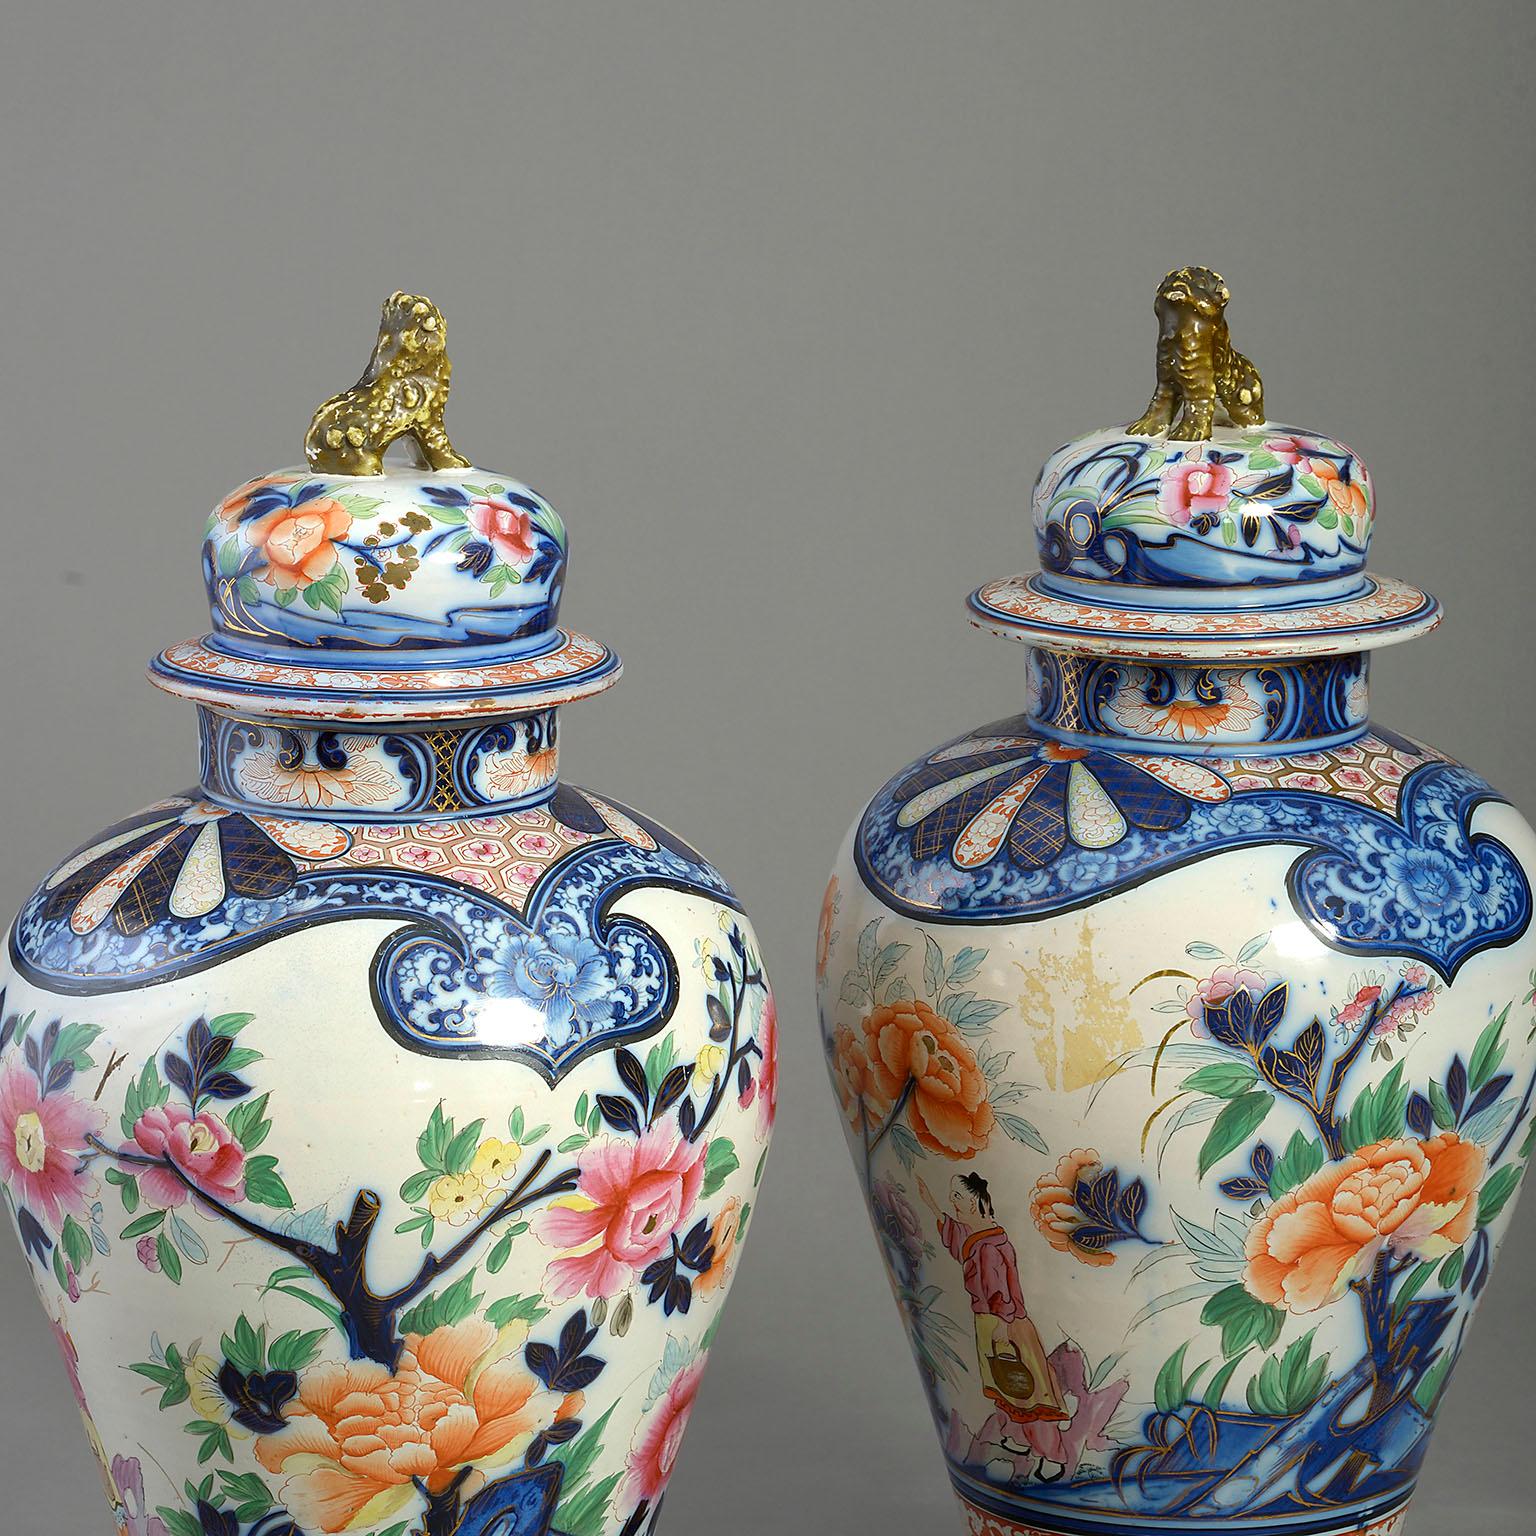 Rare paire de vases et de couvercles en faïence du début du XIXe siècle, décorés dans le goût Imari, avec des fleurons de lion dorés, les corps abondamment décorés de personnages, d'oiseaux exotiques, de fleurs et de feuillages. Ils sont posés sur